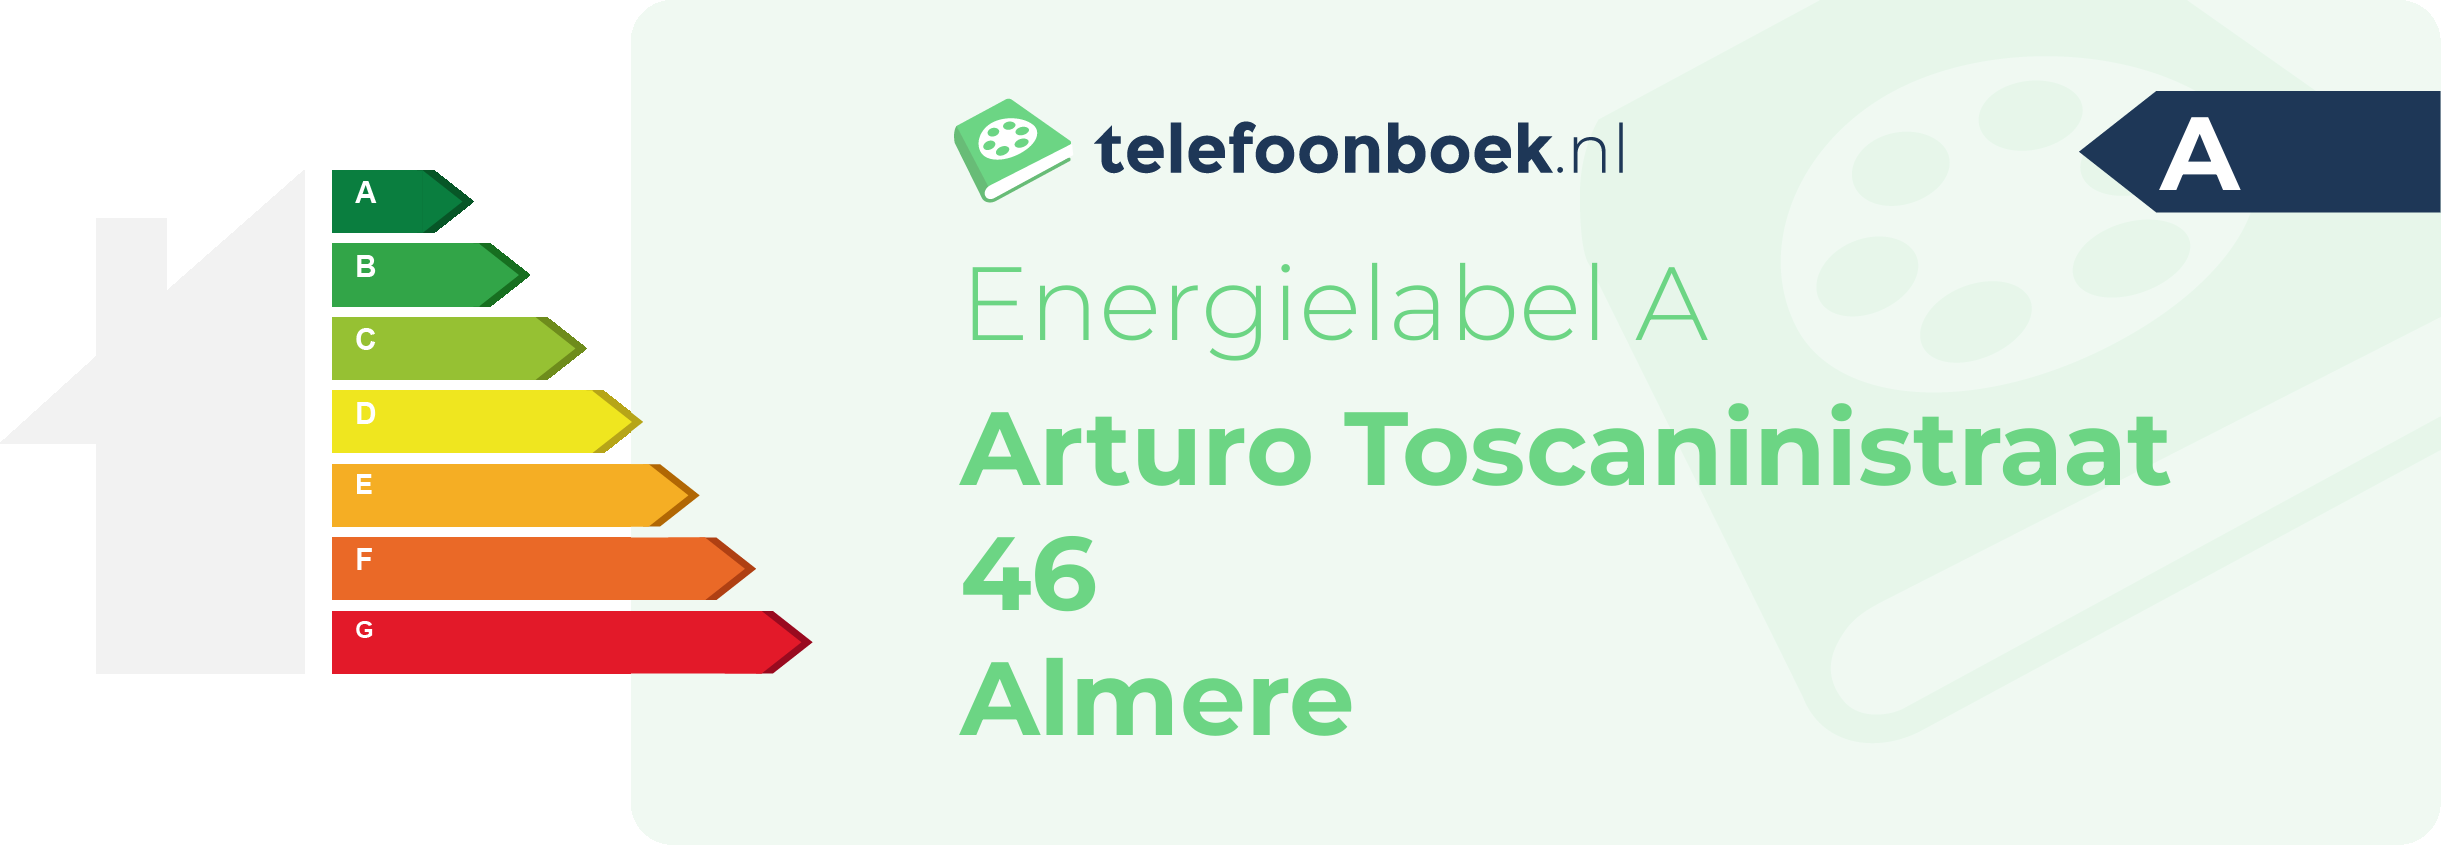 Energielabel Arturo Toscaninistraat 46 Almere